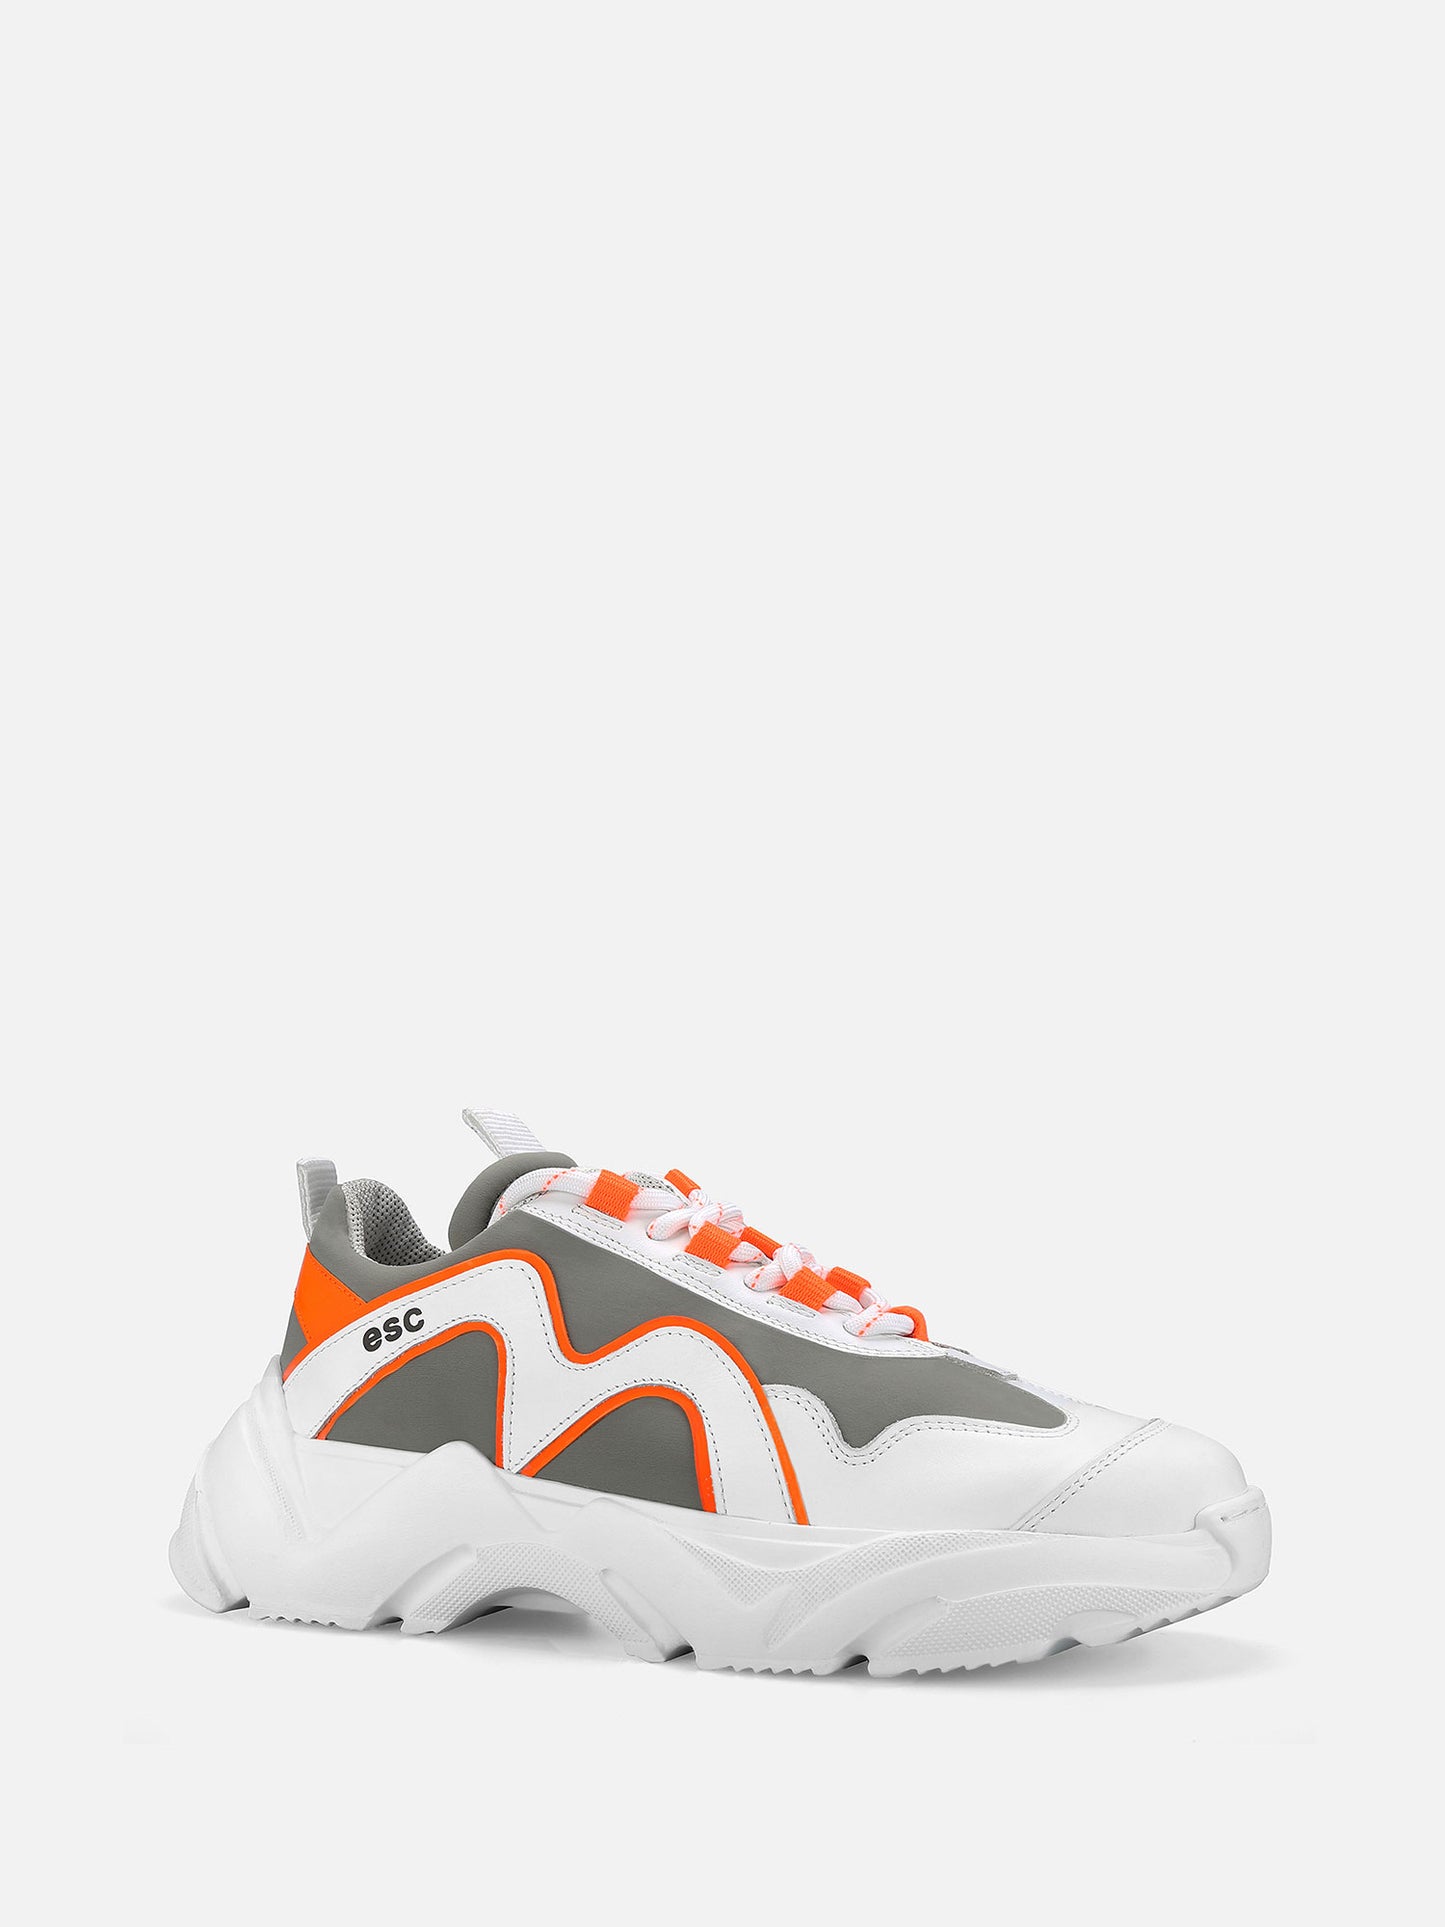 REYS Chunky Sneakers - Grey/Orange